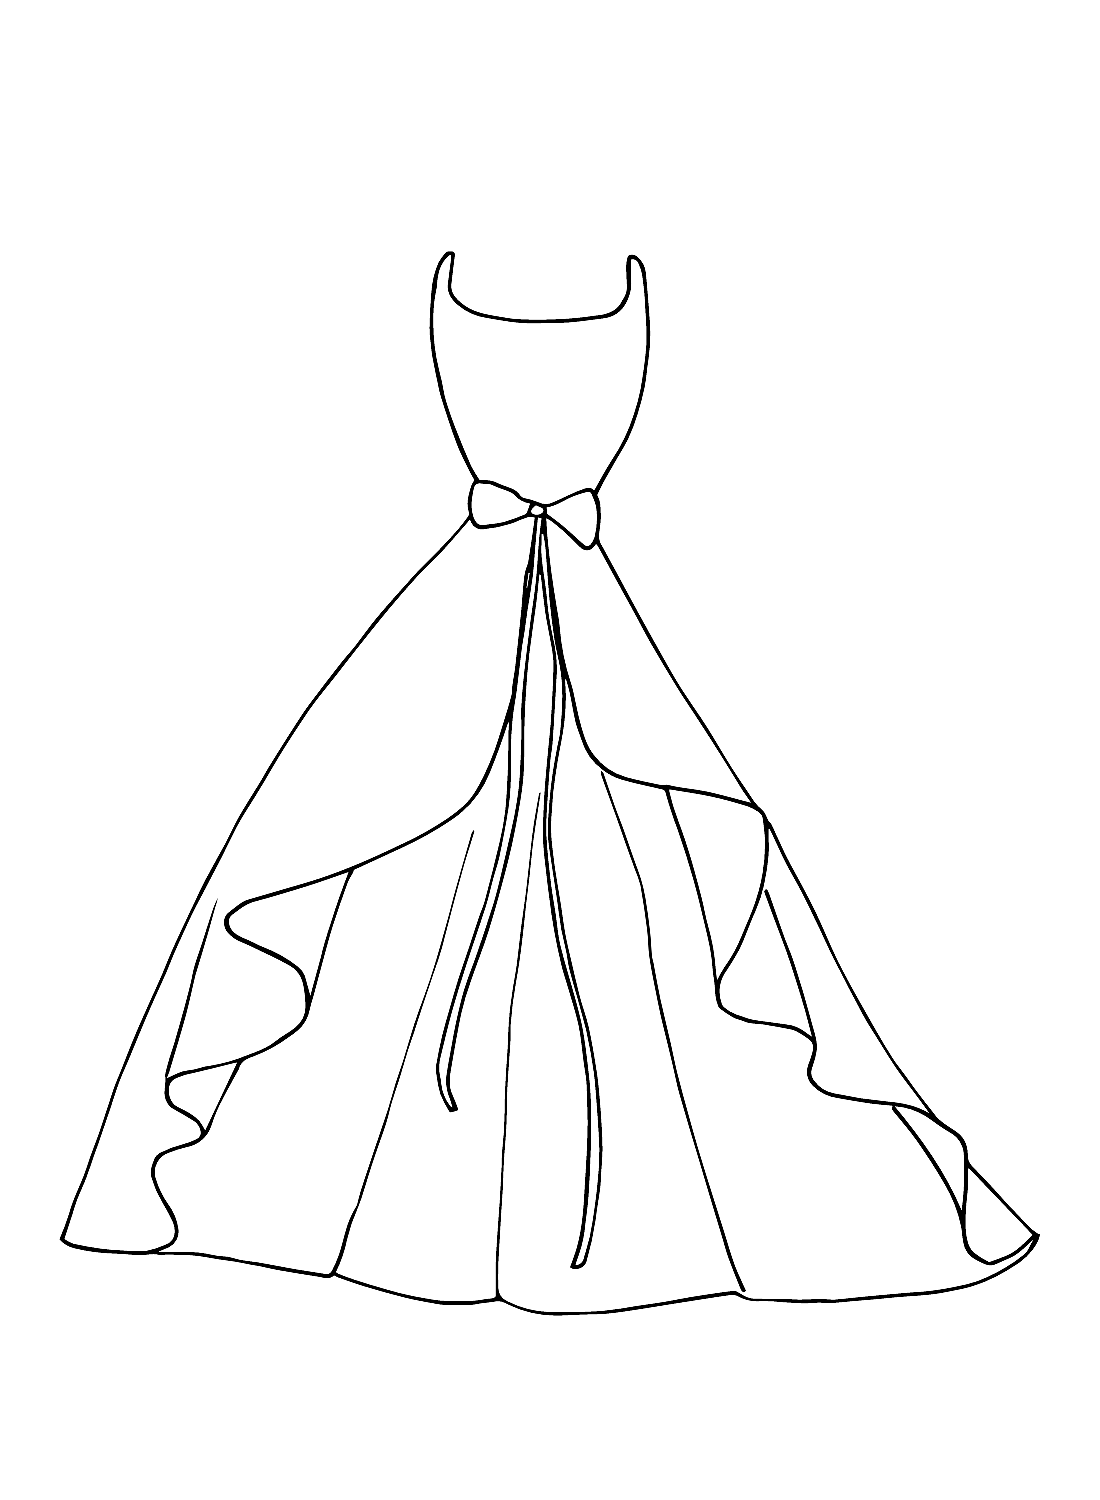 Imprimer une robe de mariée à partir d'une robe de mariée